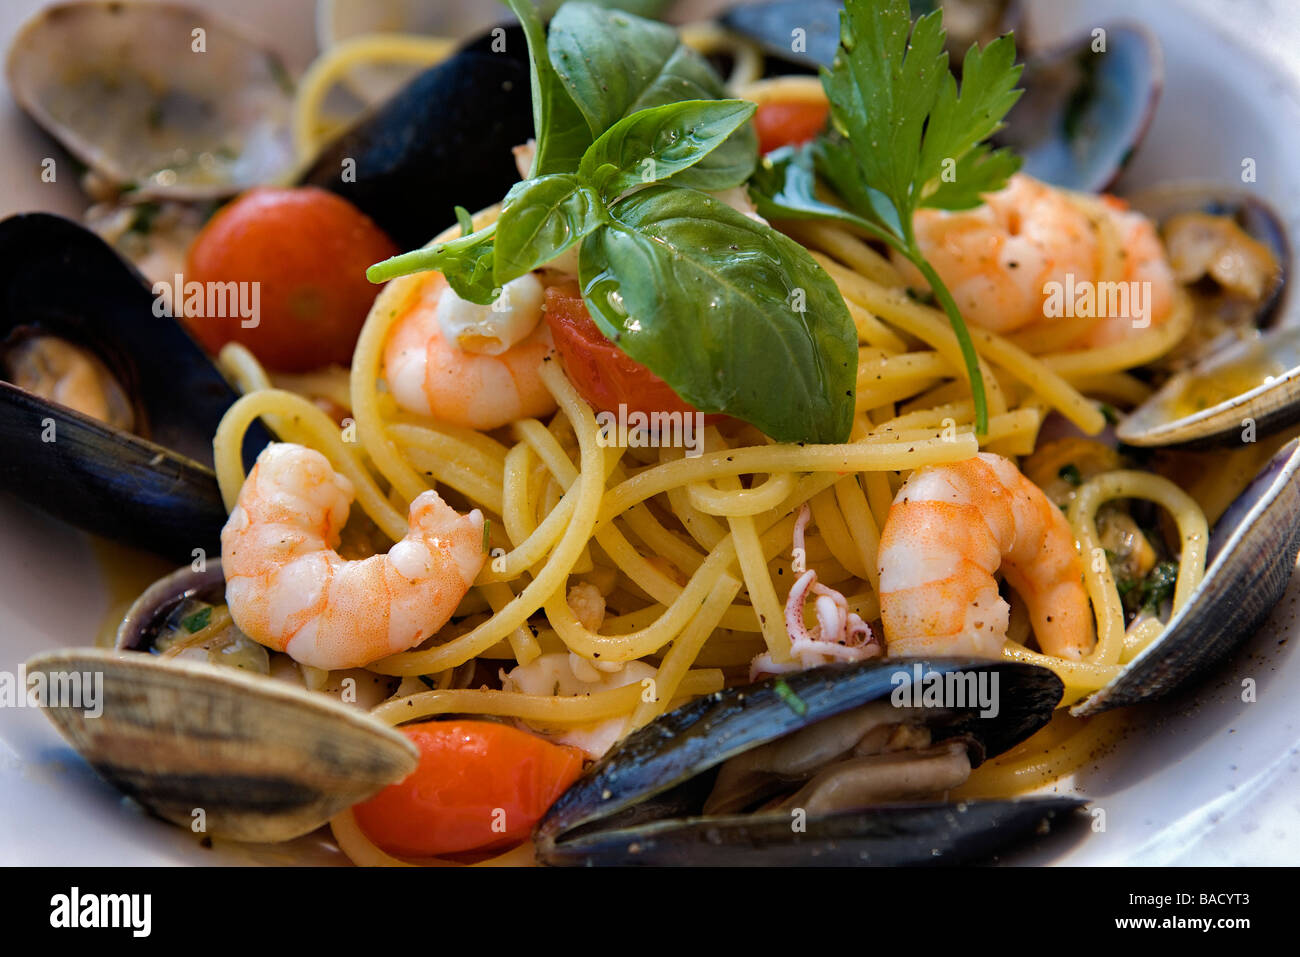 Как называются итальянские блюда. Итальянская еда. Итальянская кухня блюда. Традиционные блюда Италии. Итальянская Национальная кухня.